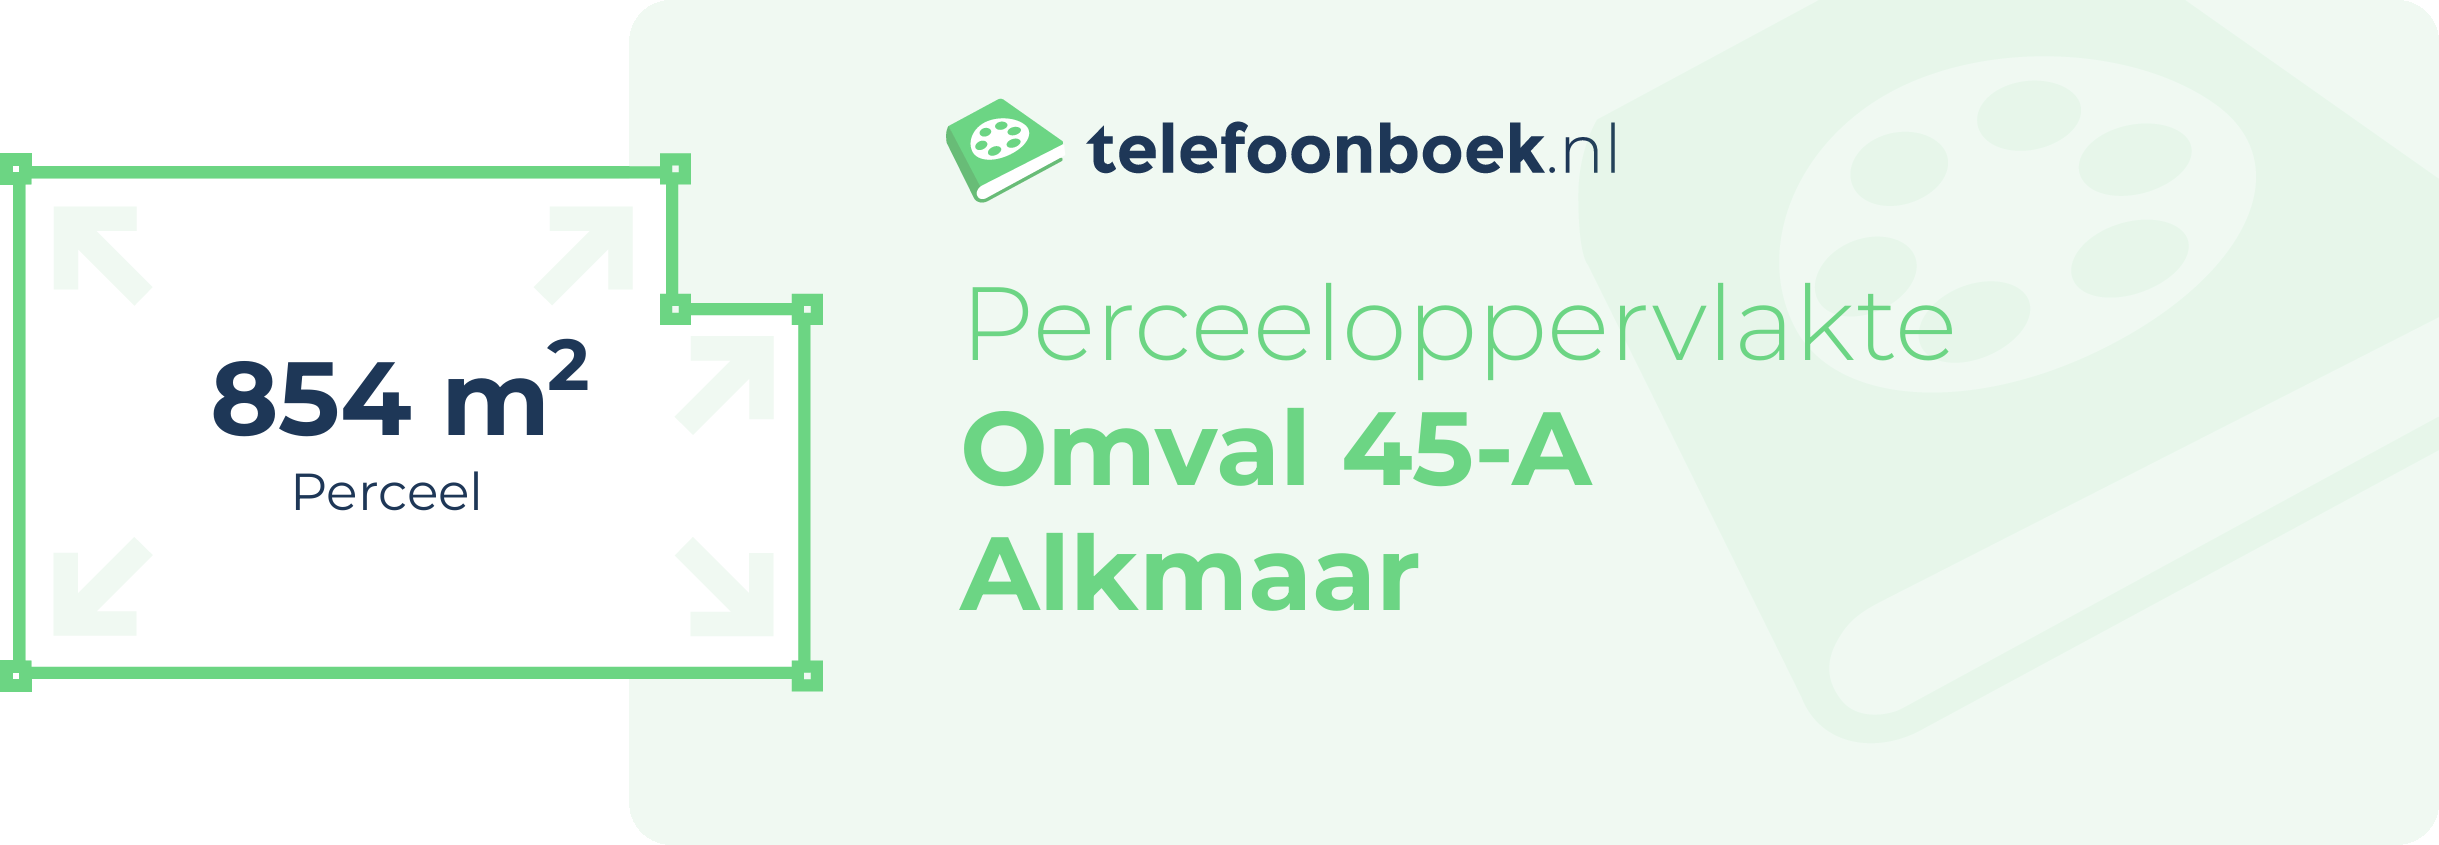 Perceeloppervlakte Omval 45-A Alkmaar